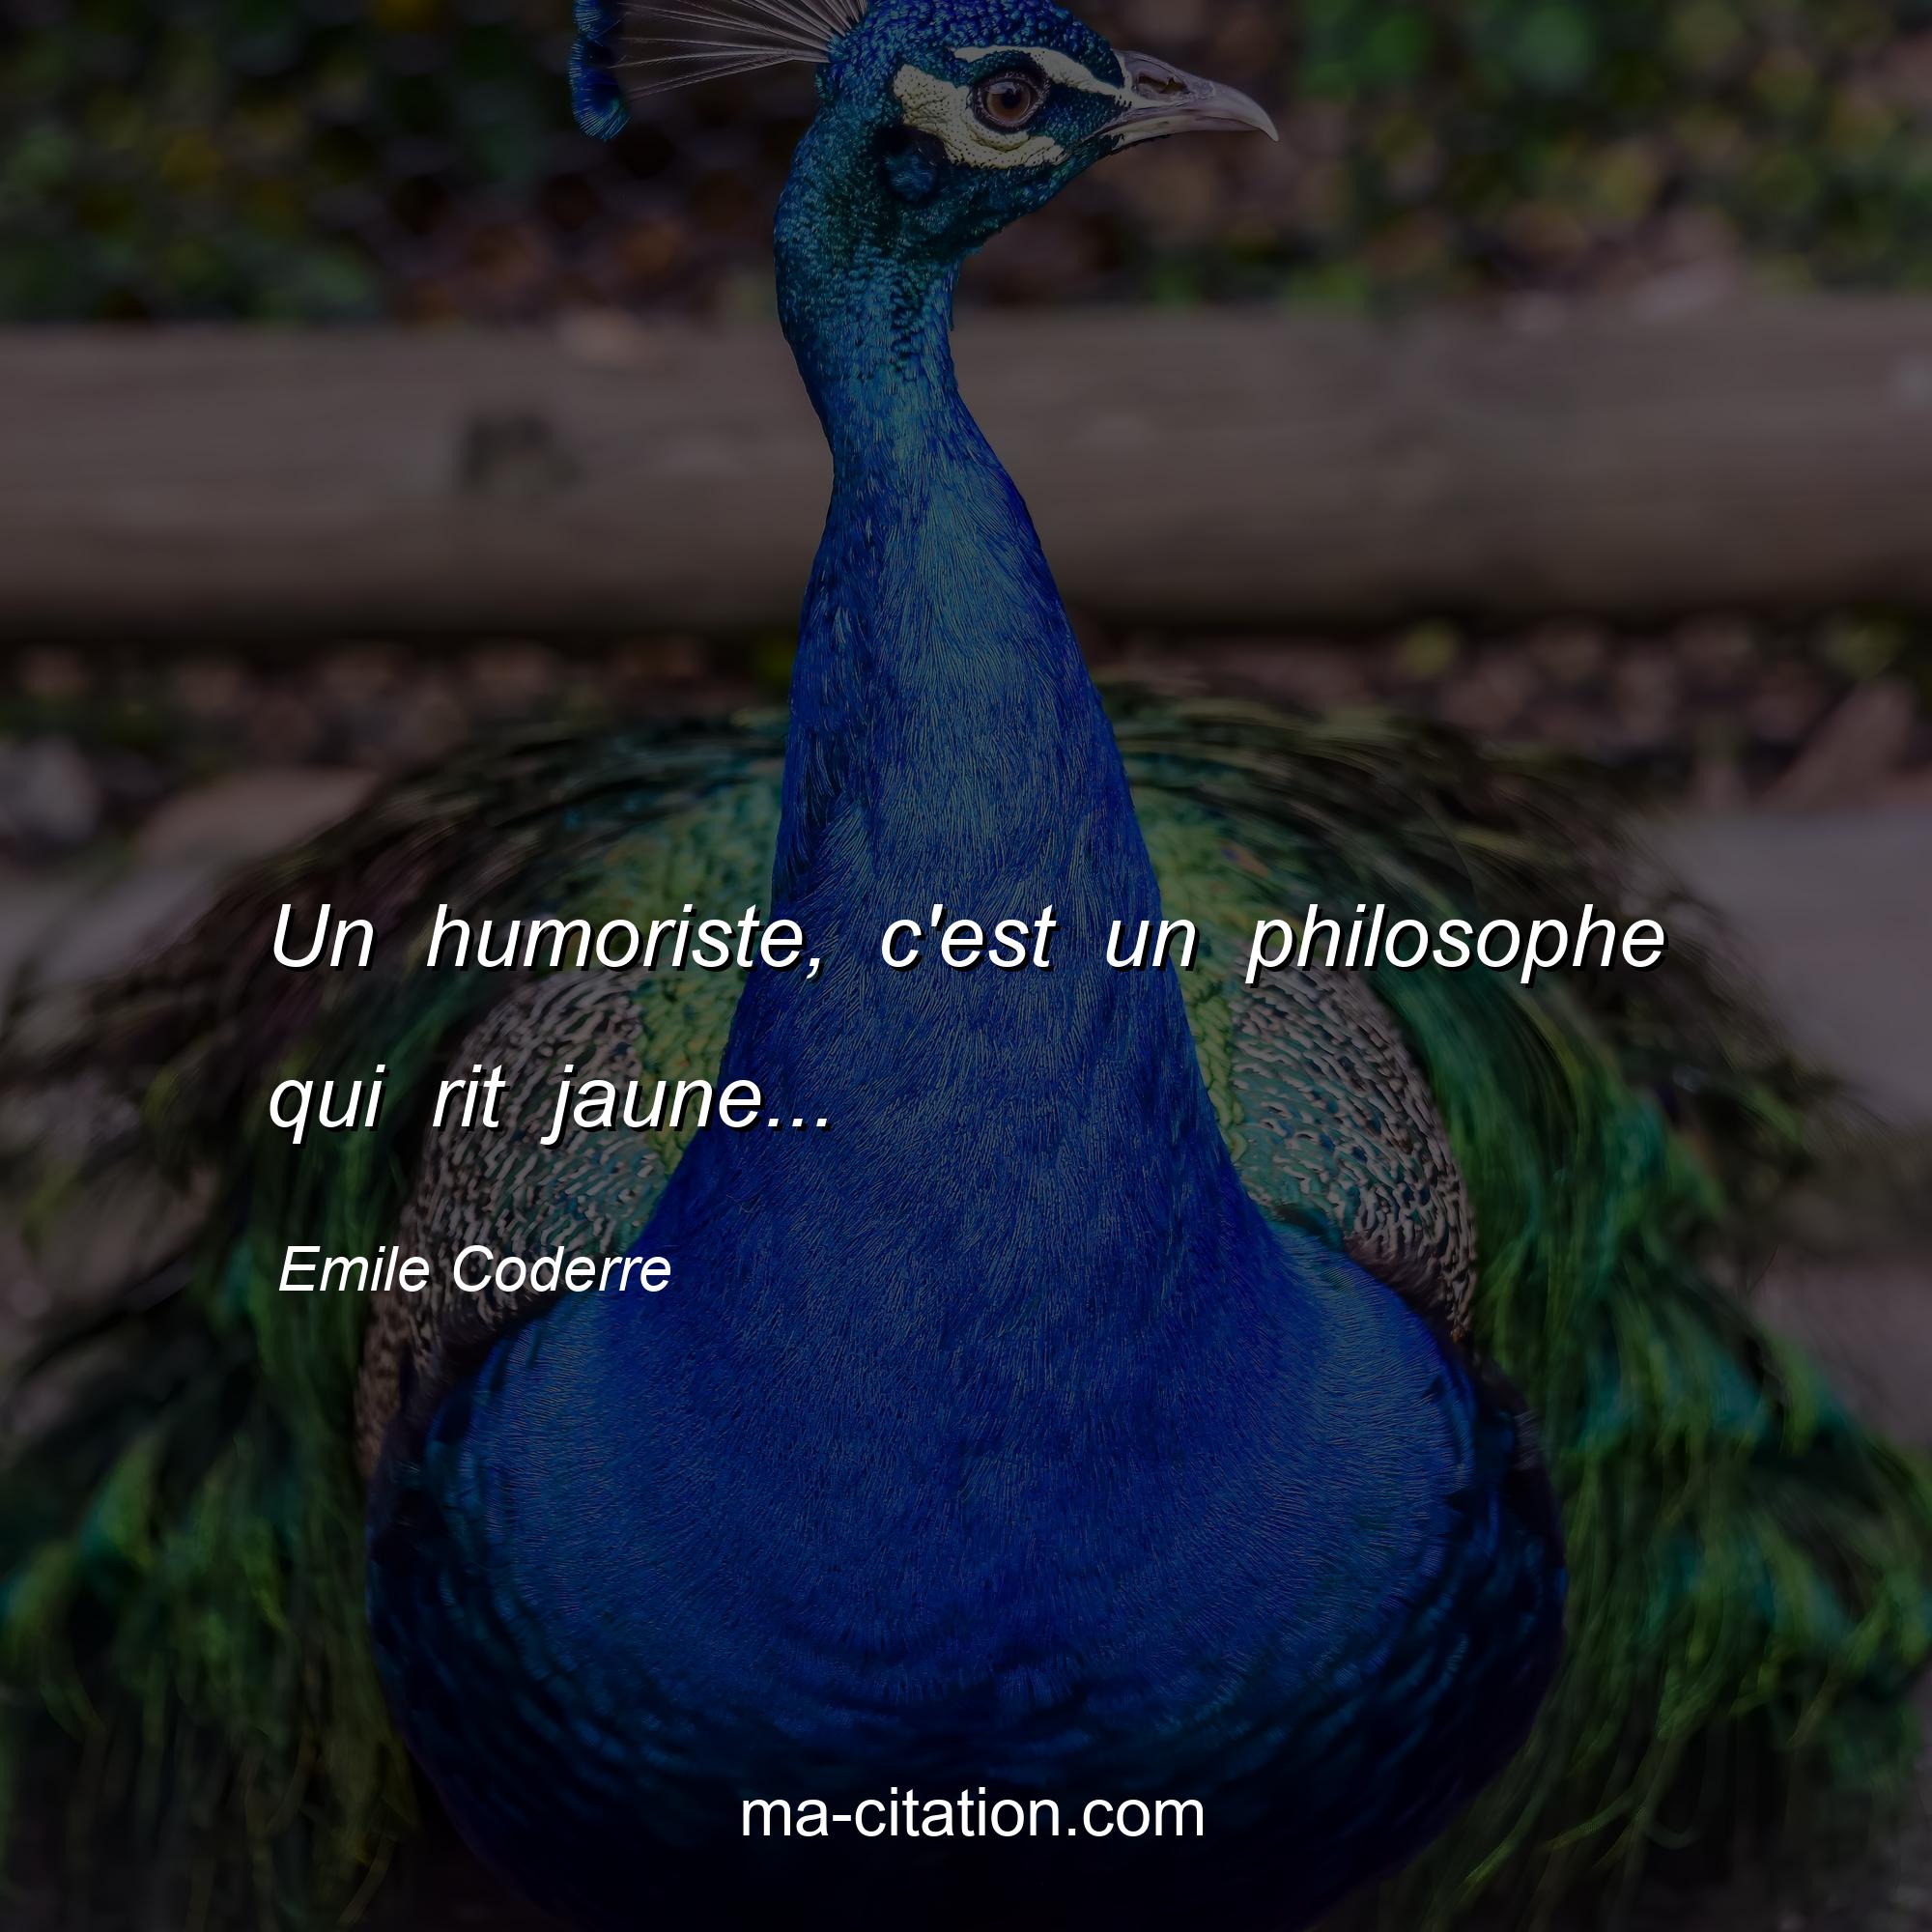 Emile Coderre : Un humoriste, c'est un philosophe qui rit jaune...